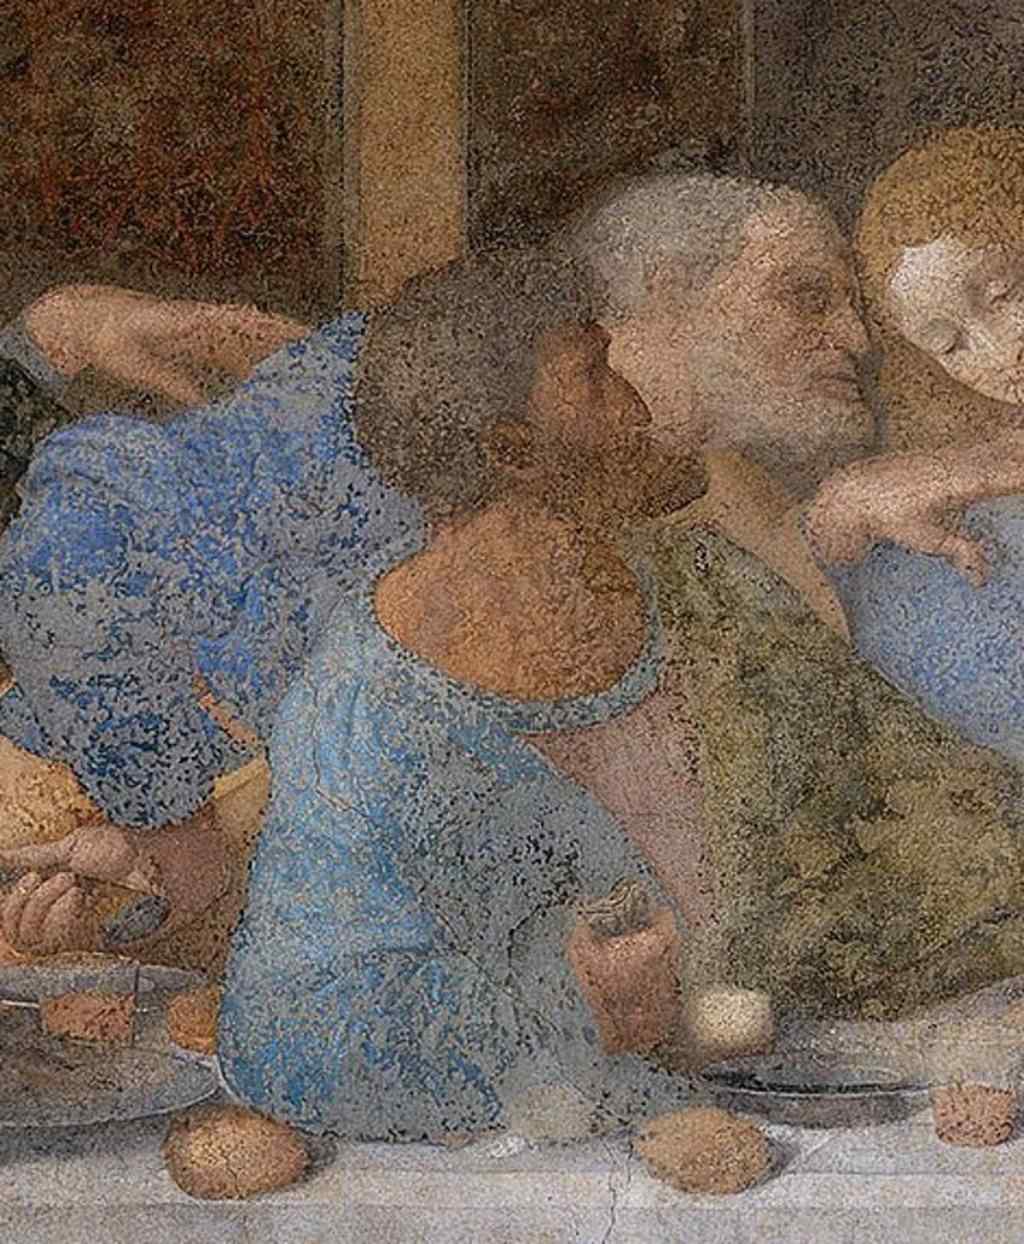 Leonardo da Vinci Yahudanin Ikna Edici Bir Suclu Gibi Gorunmesini Istiyordu